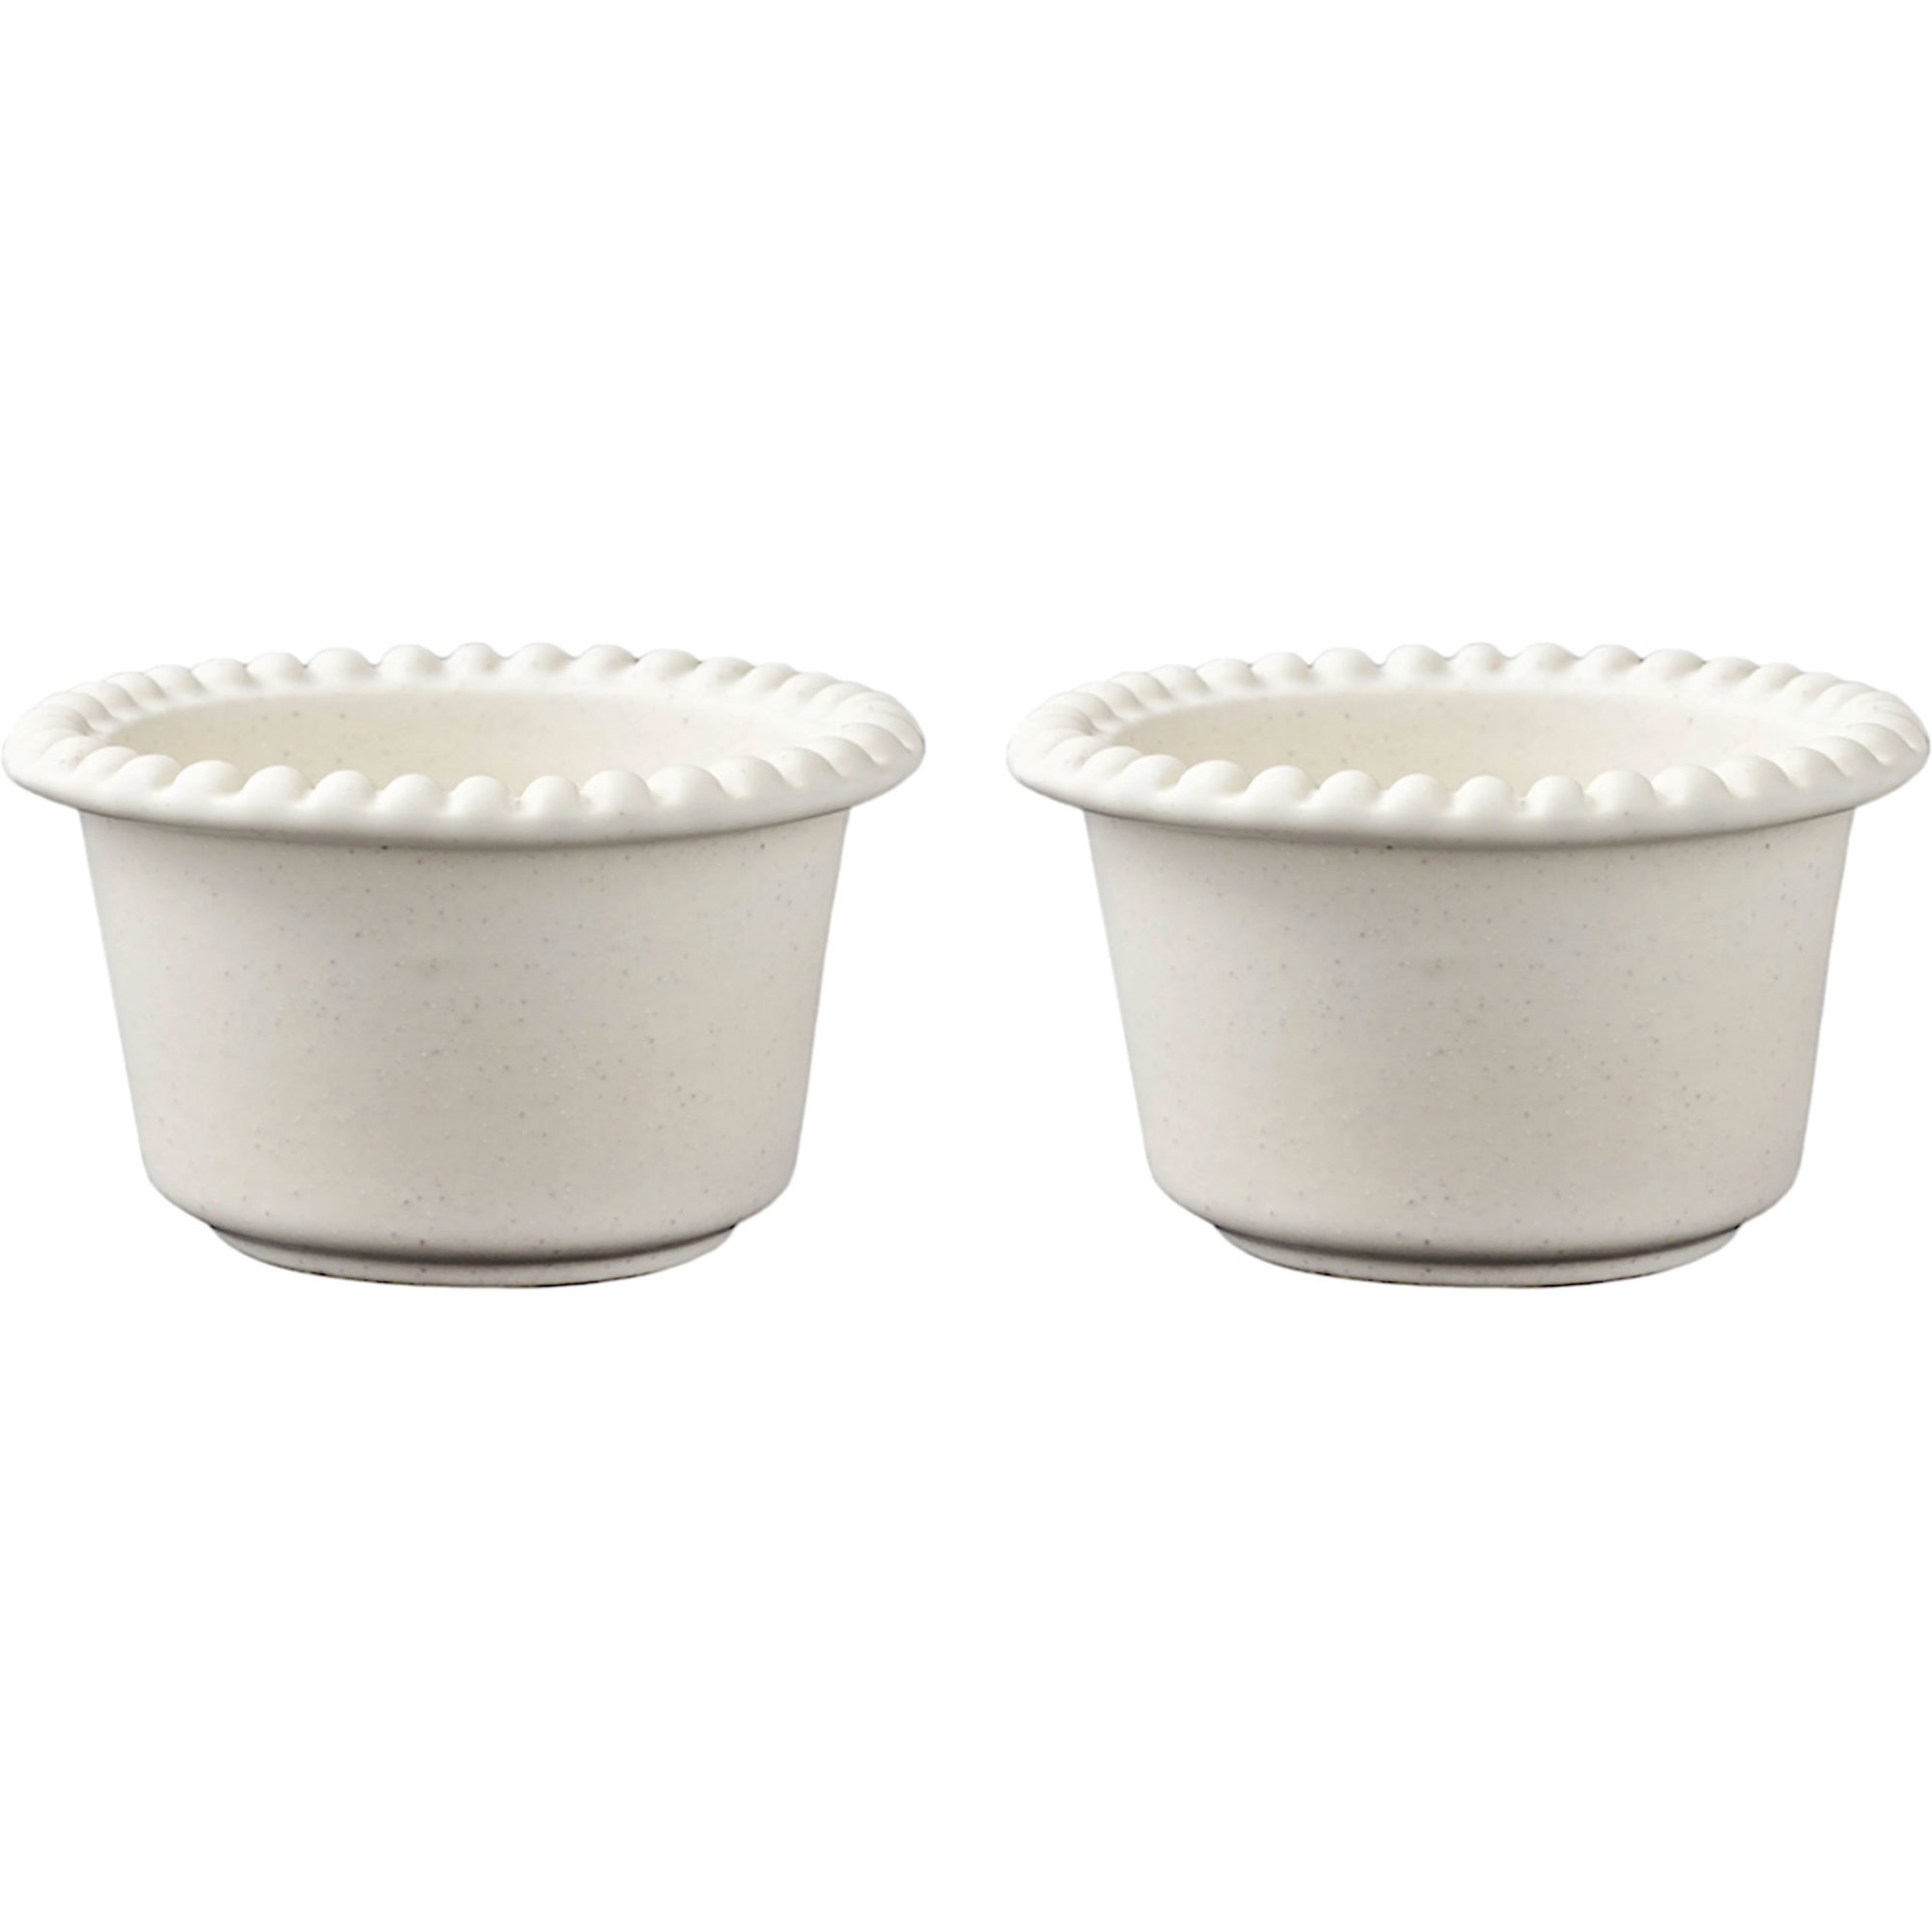 PotteryJo Daria 12 cm Serveringsskål 2 stk, Cotton White Skål